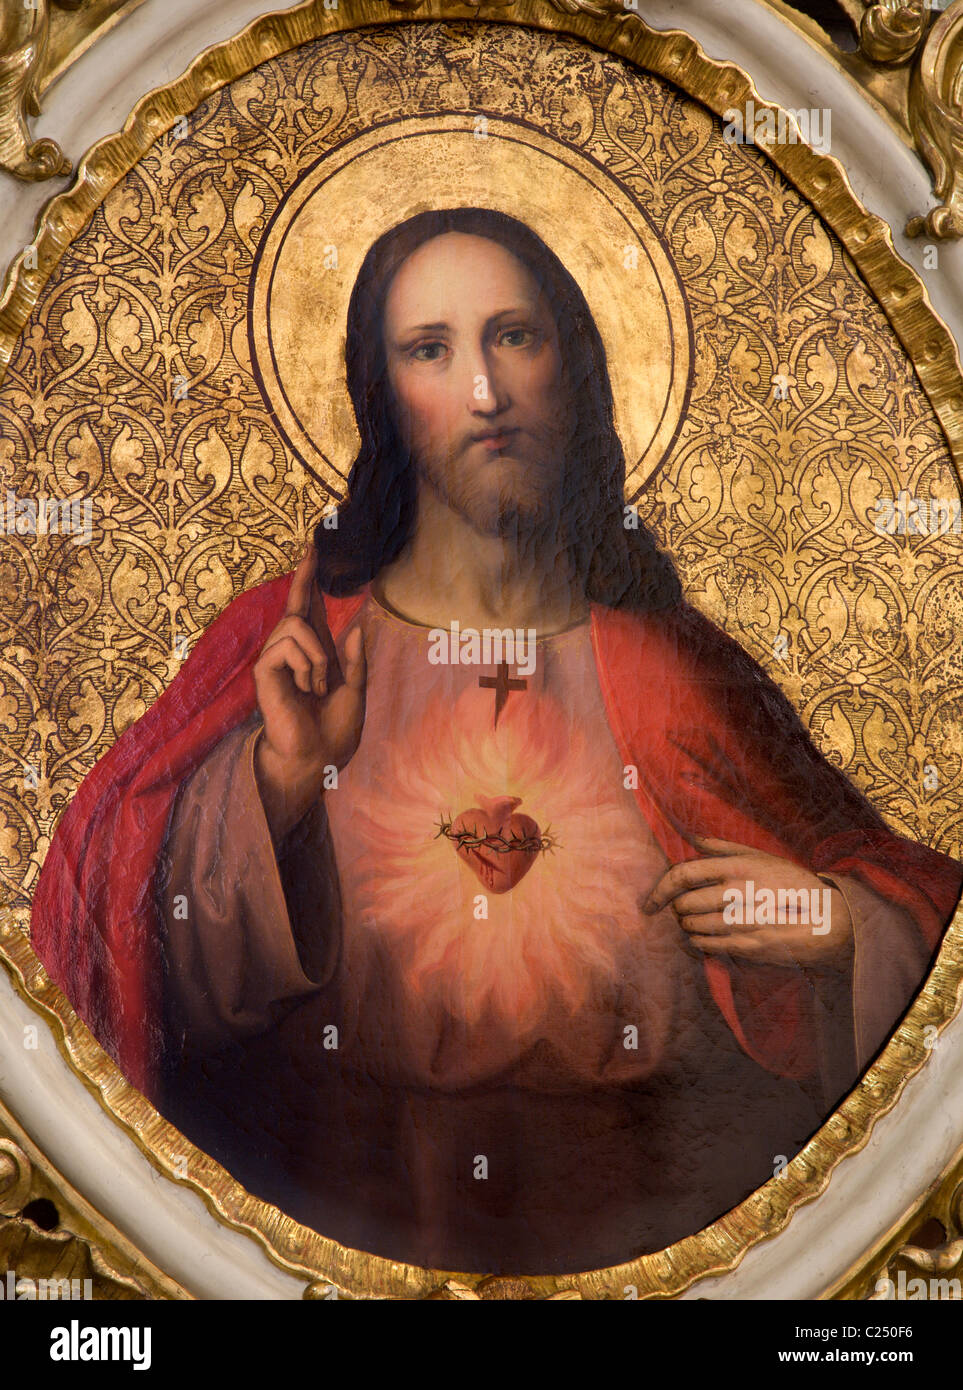 Pintura de jesus cristo fotografías e imágenes de alta resolución - Alamy